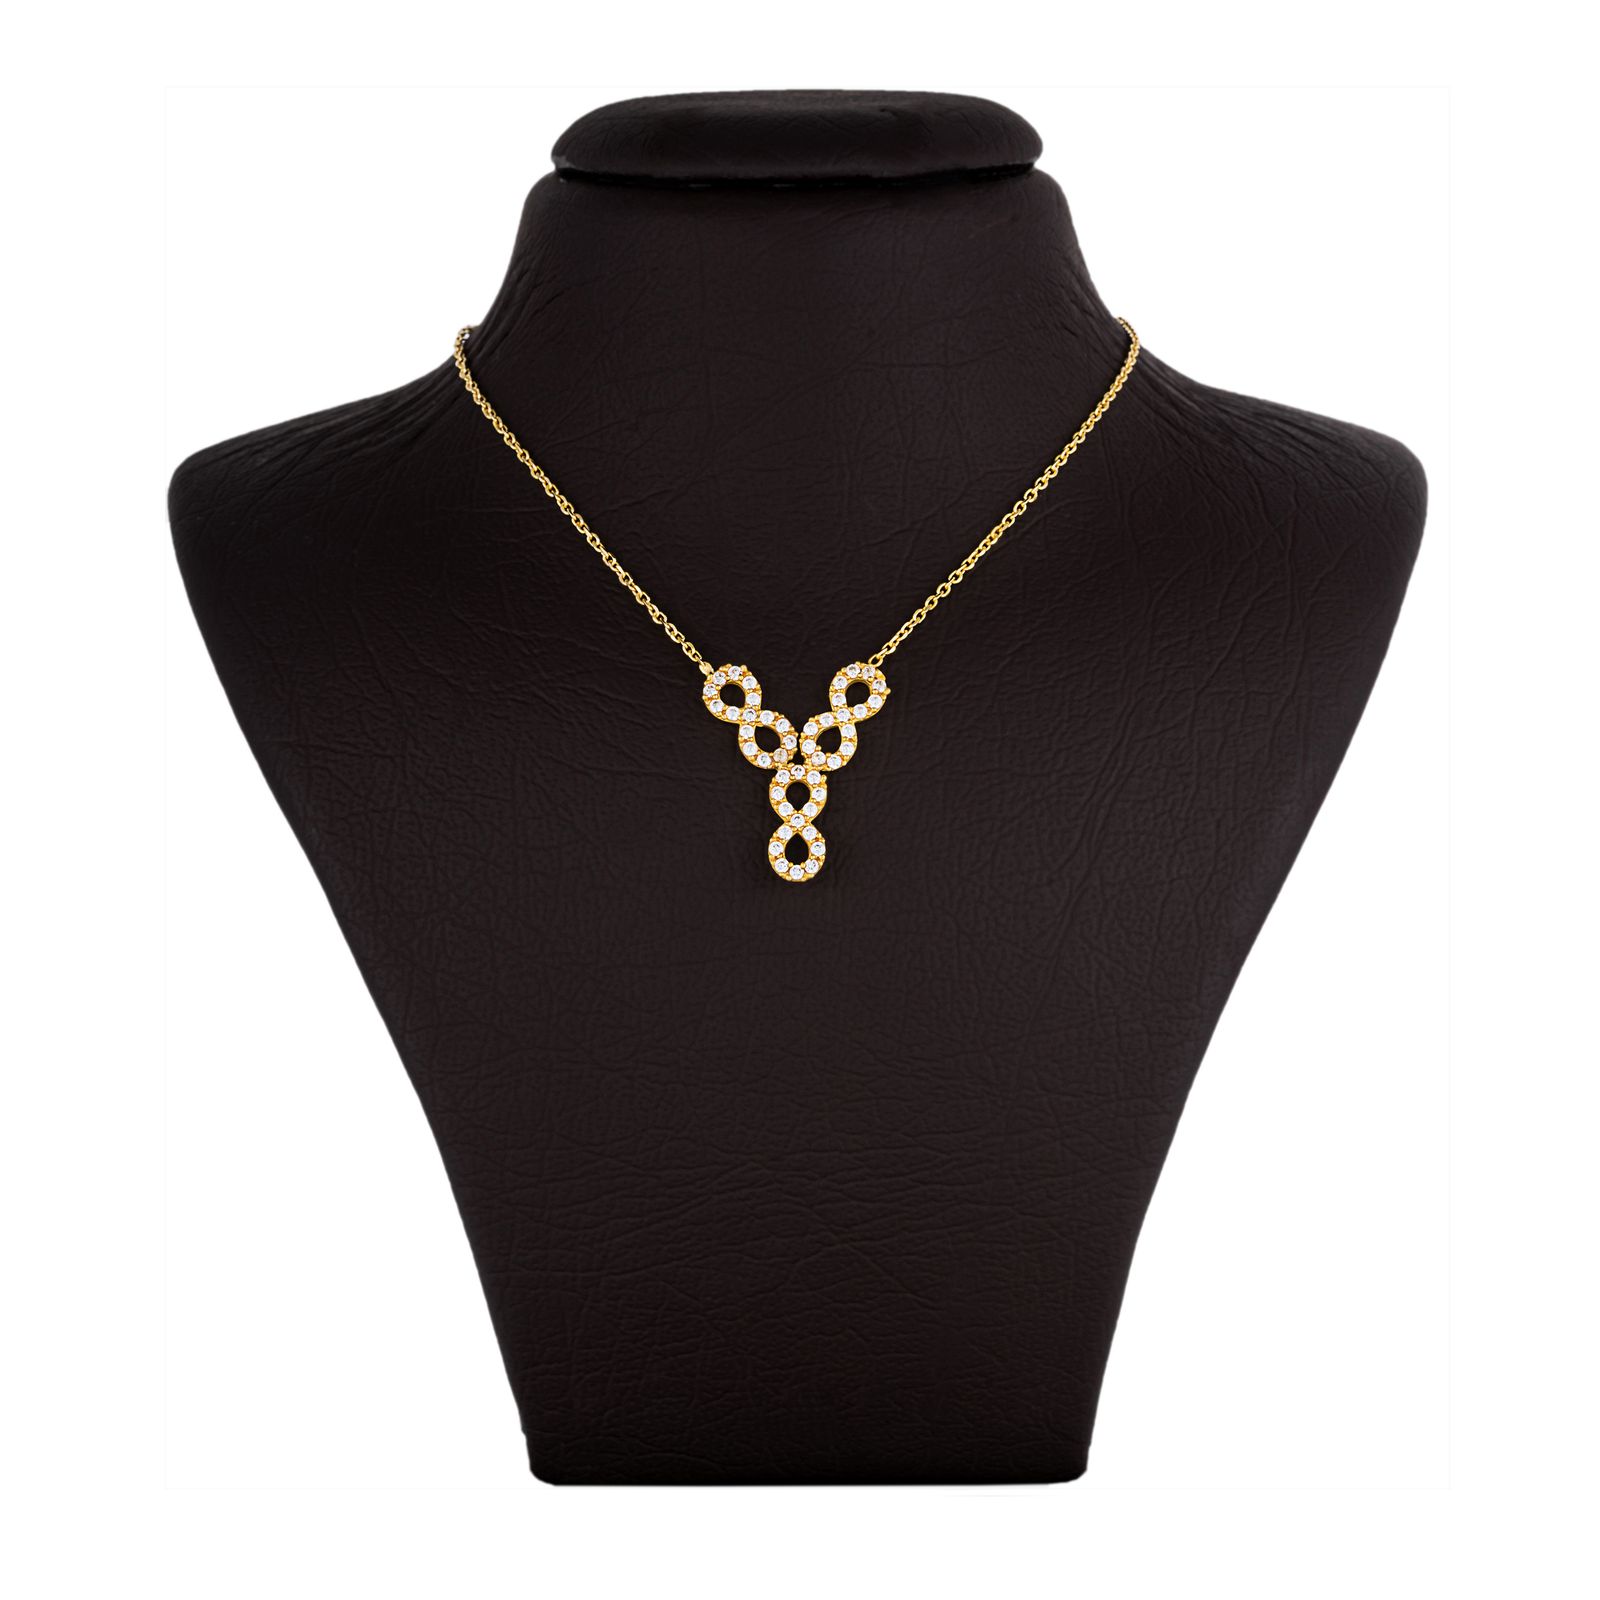  گردنبند طلا 18 عیار زنانه جواهری سون مدل 2754 -  - 1